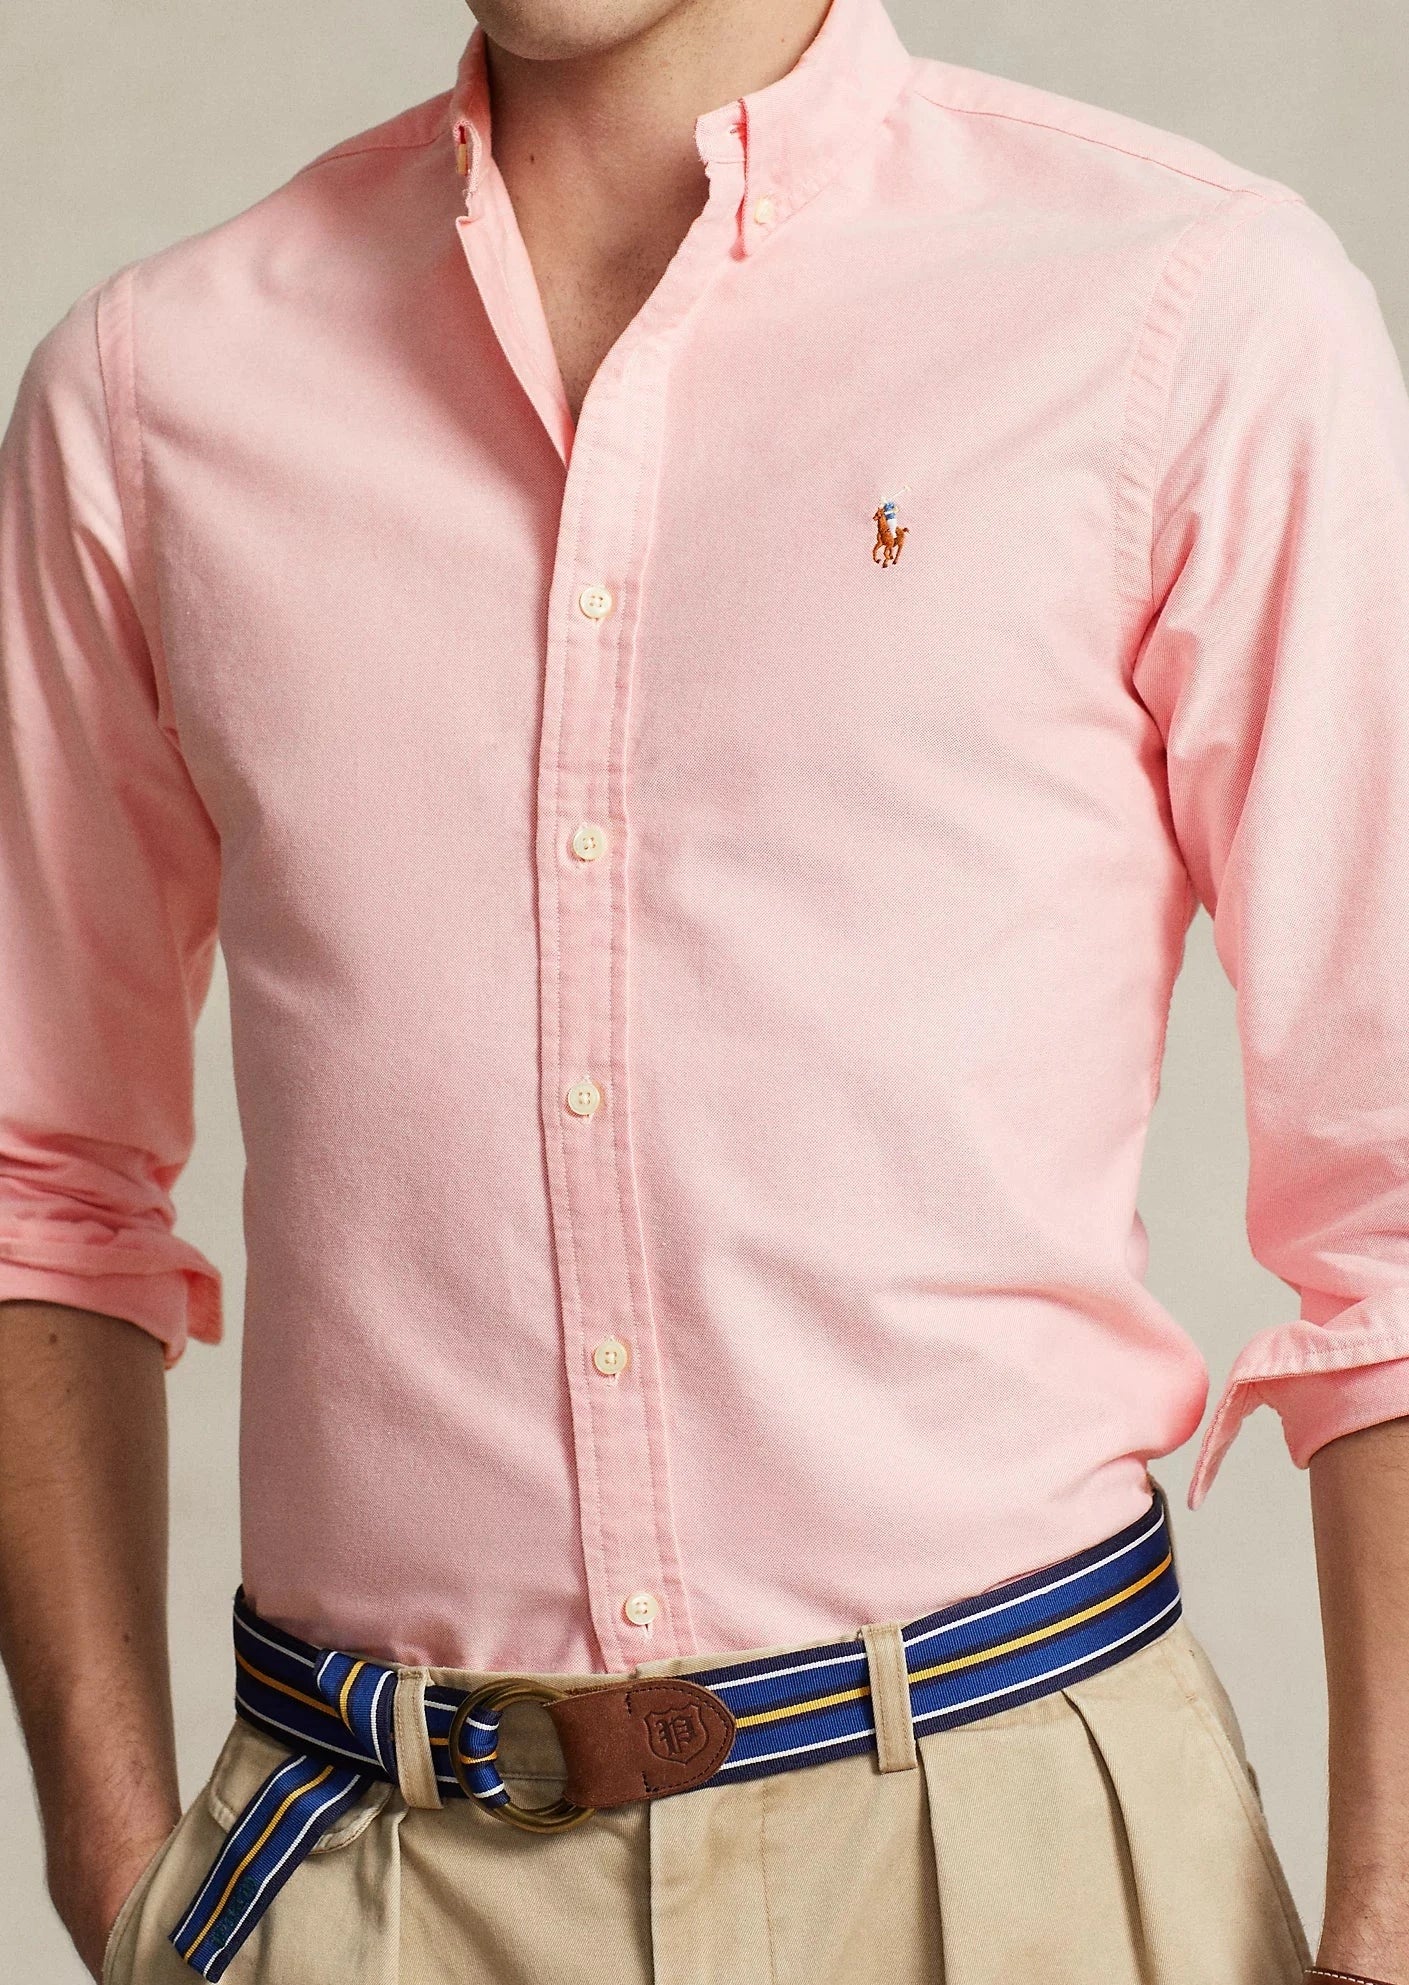 Chemise homme Ralph Lauren ajustée rose | Georgespaul